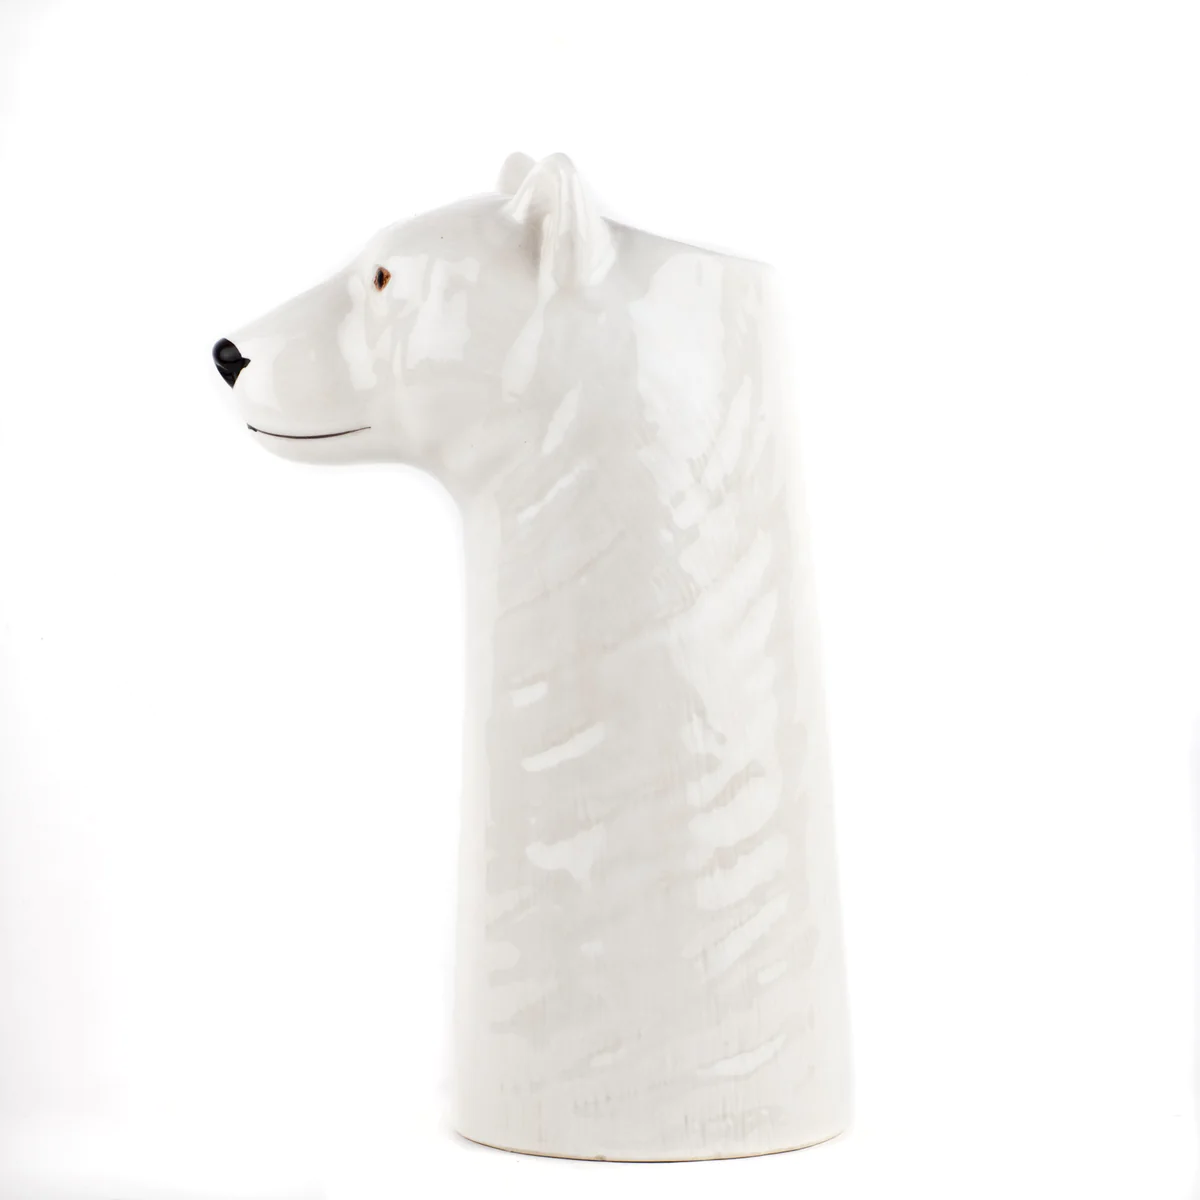 Quail Ceramics Polar bear flower vase